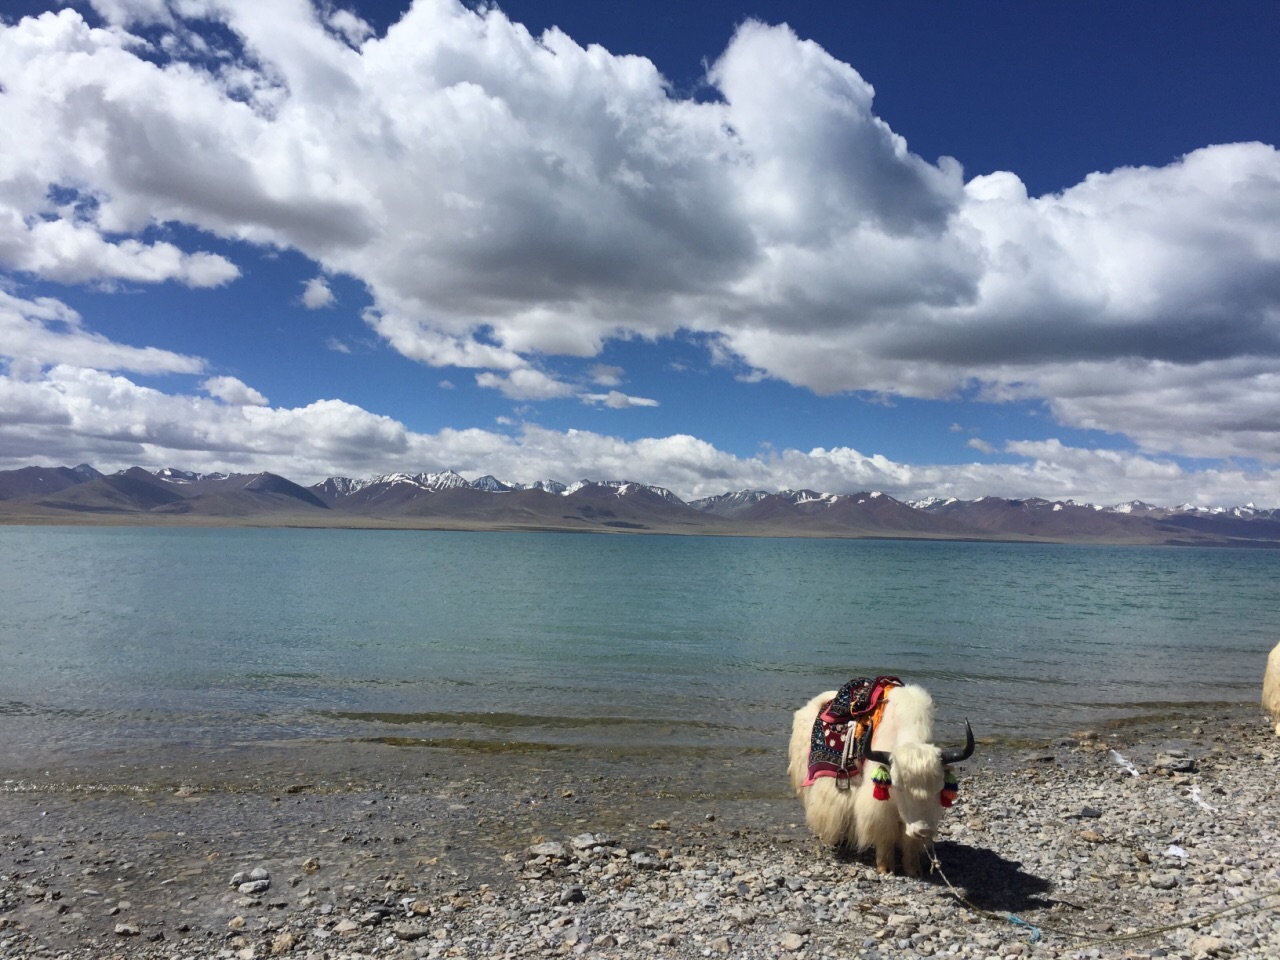 来西藏纳木错一定要去 圣地圣湖 景色太美